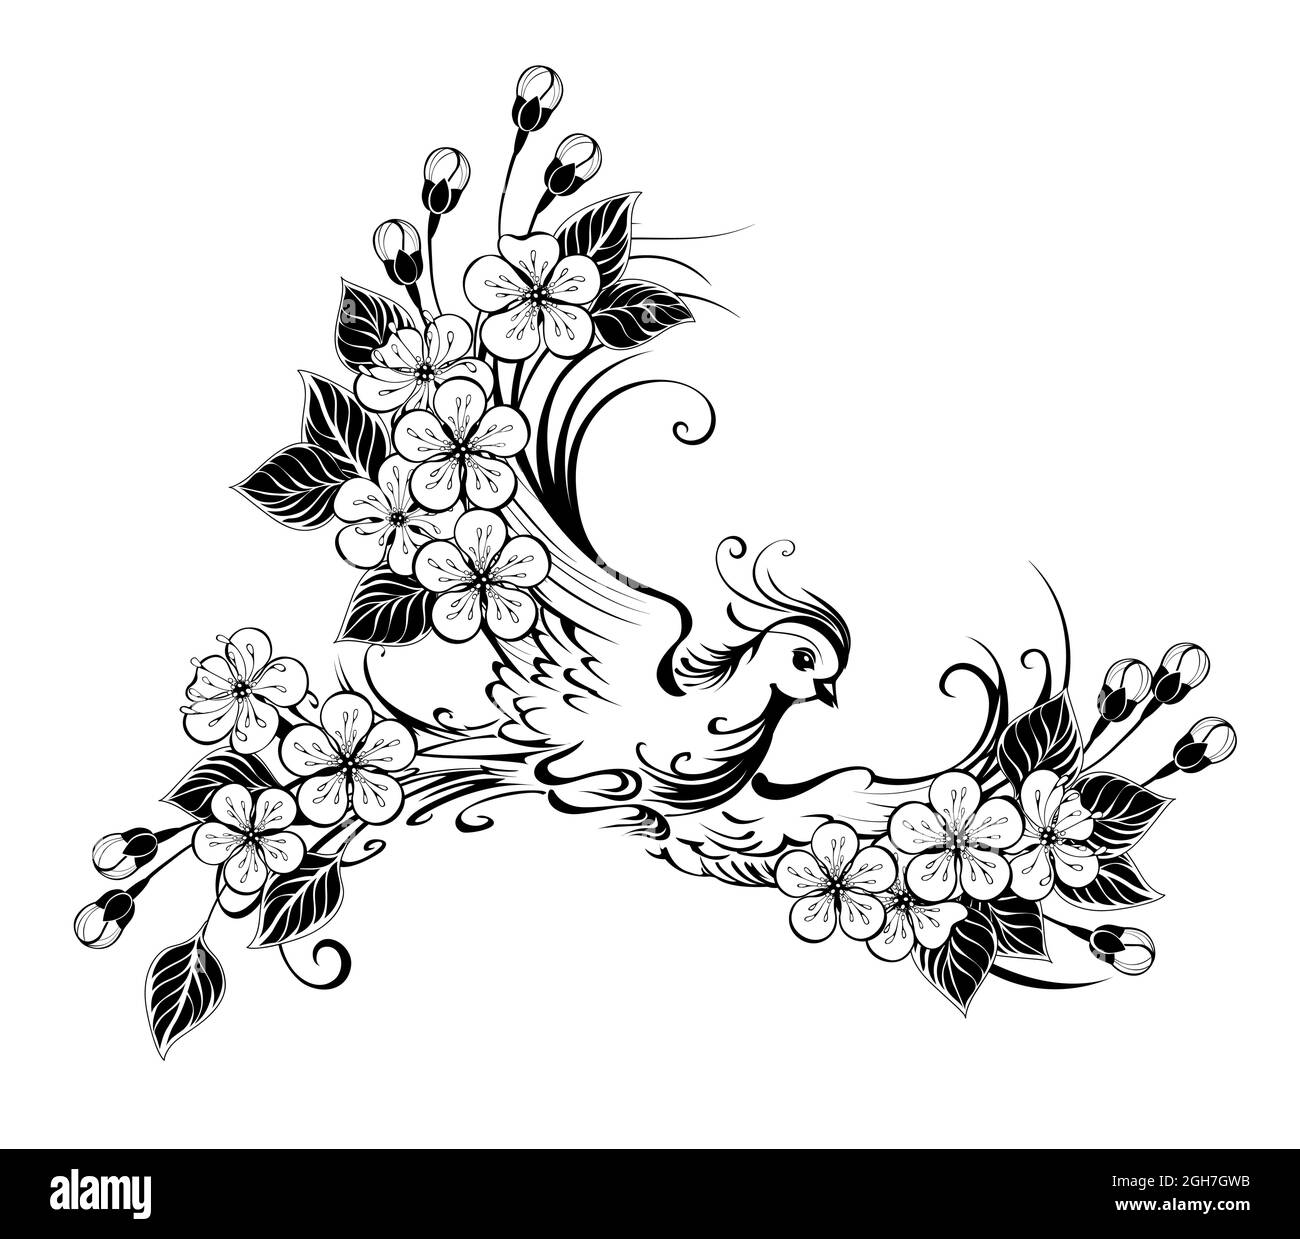 Artísticamente dibujado, contorno, pájaro volador con alas decoradas con flores sobre fondo blanco. Ilustración del Vector